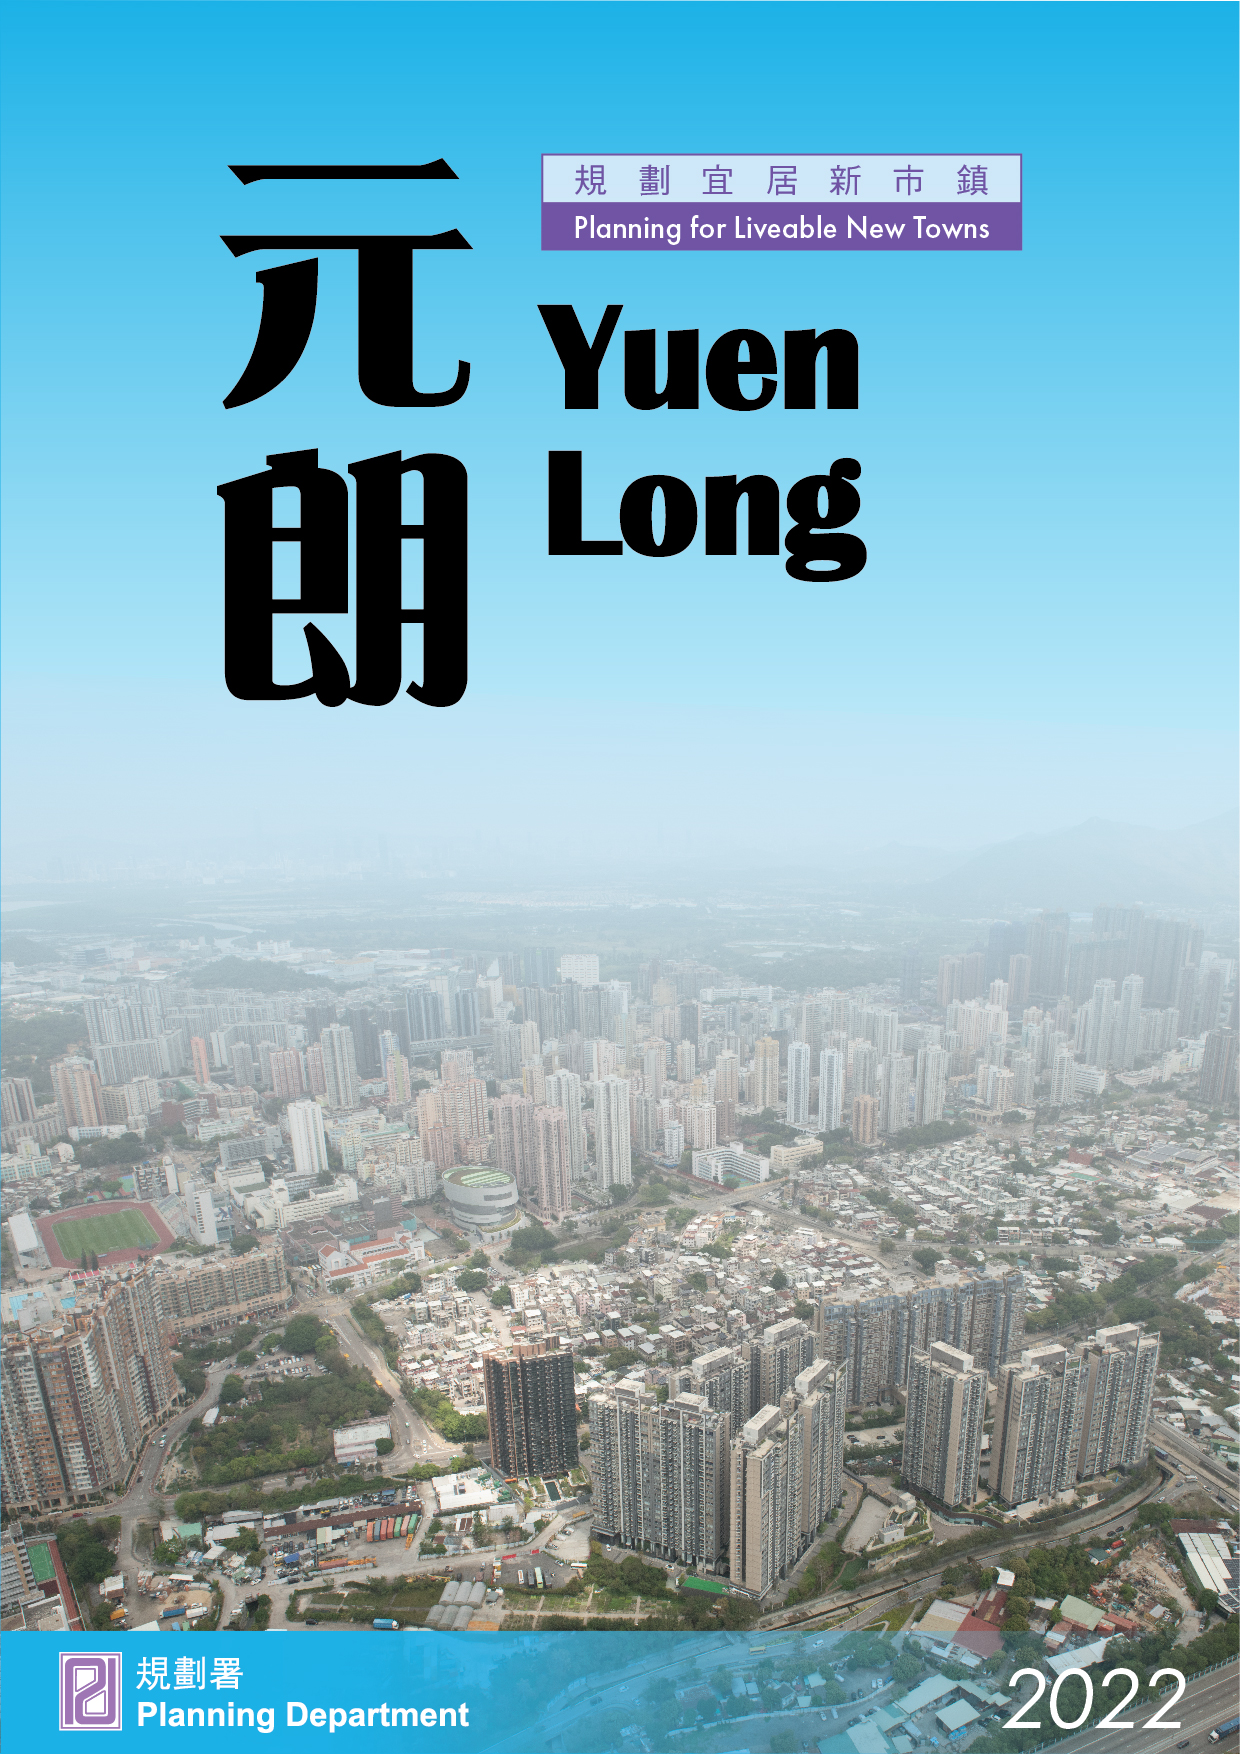 Yuen Long cover